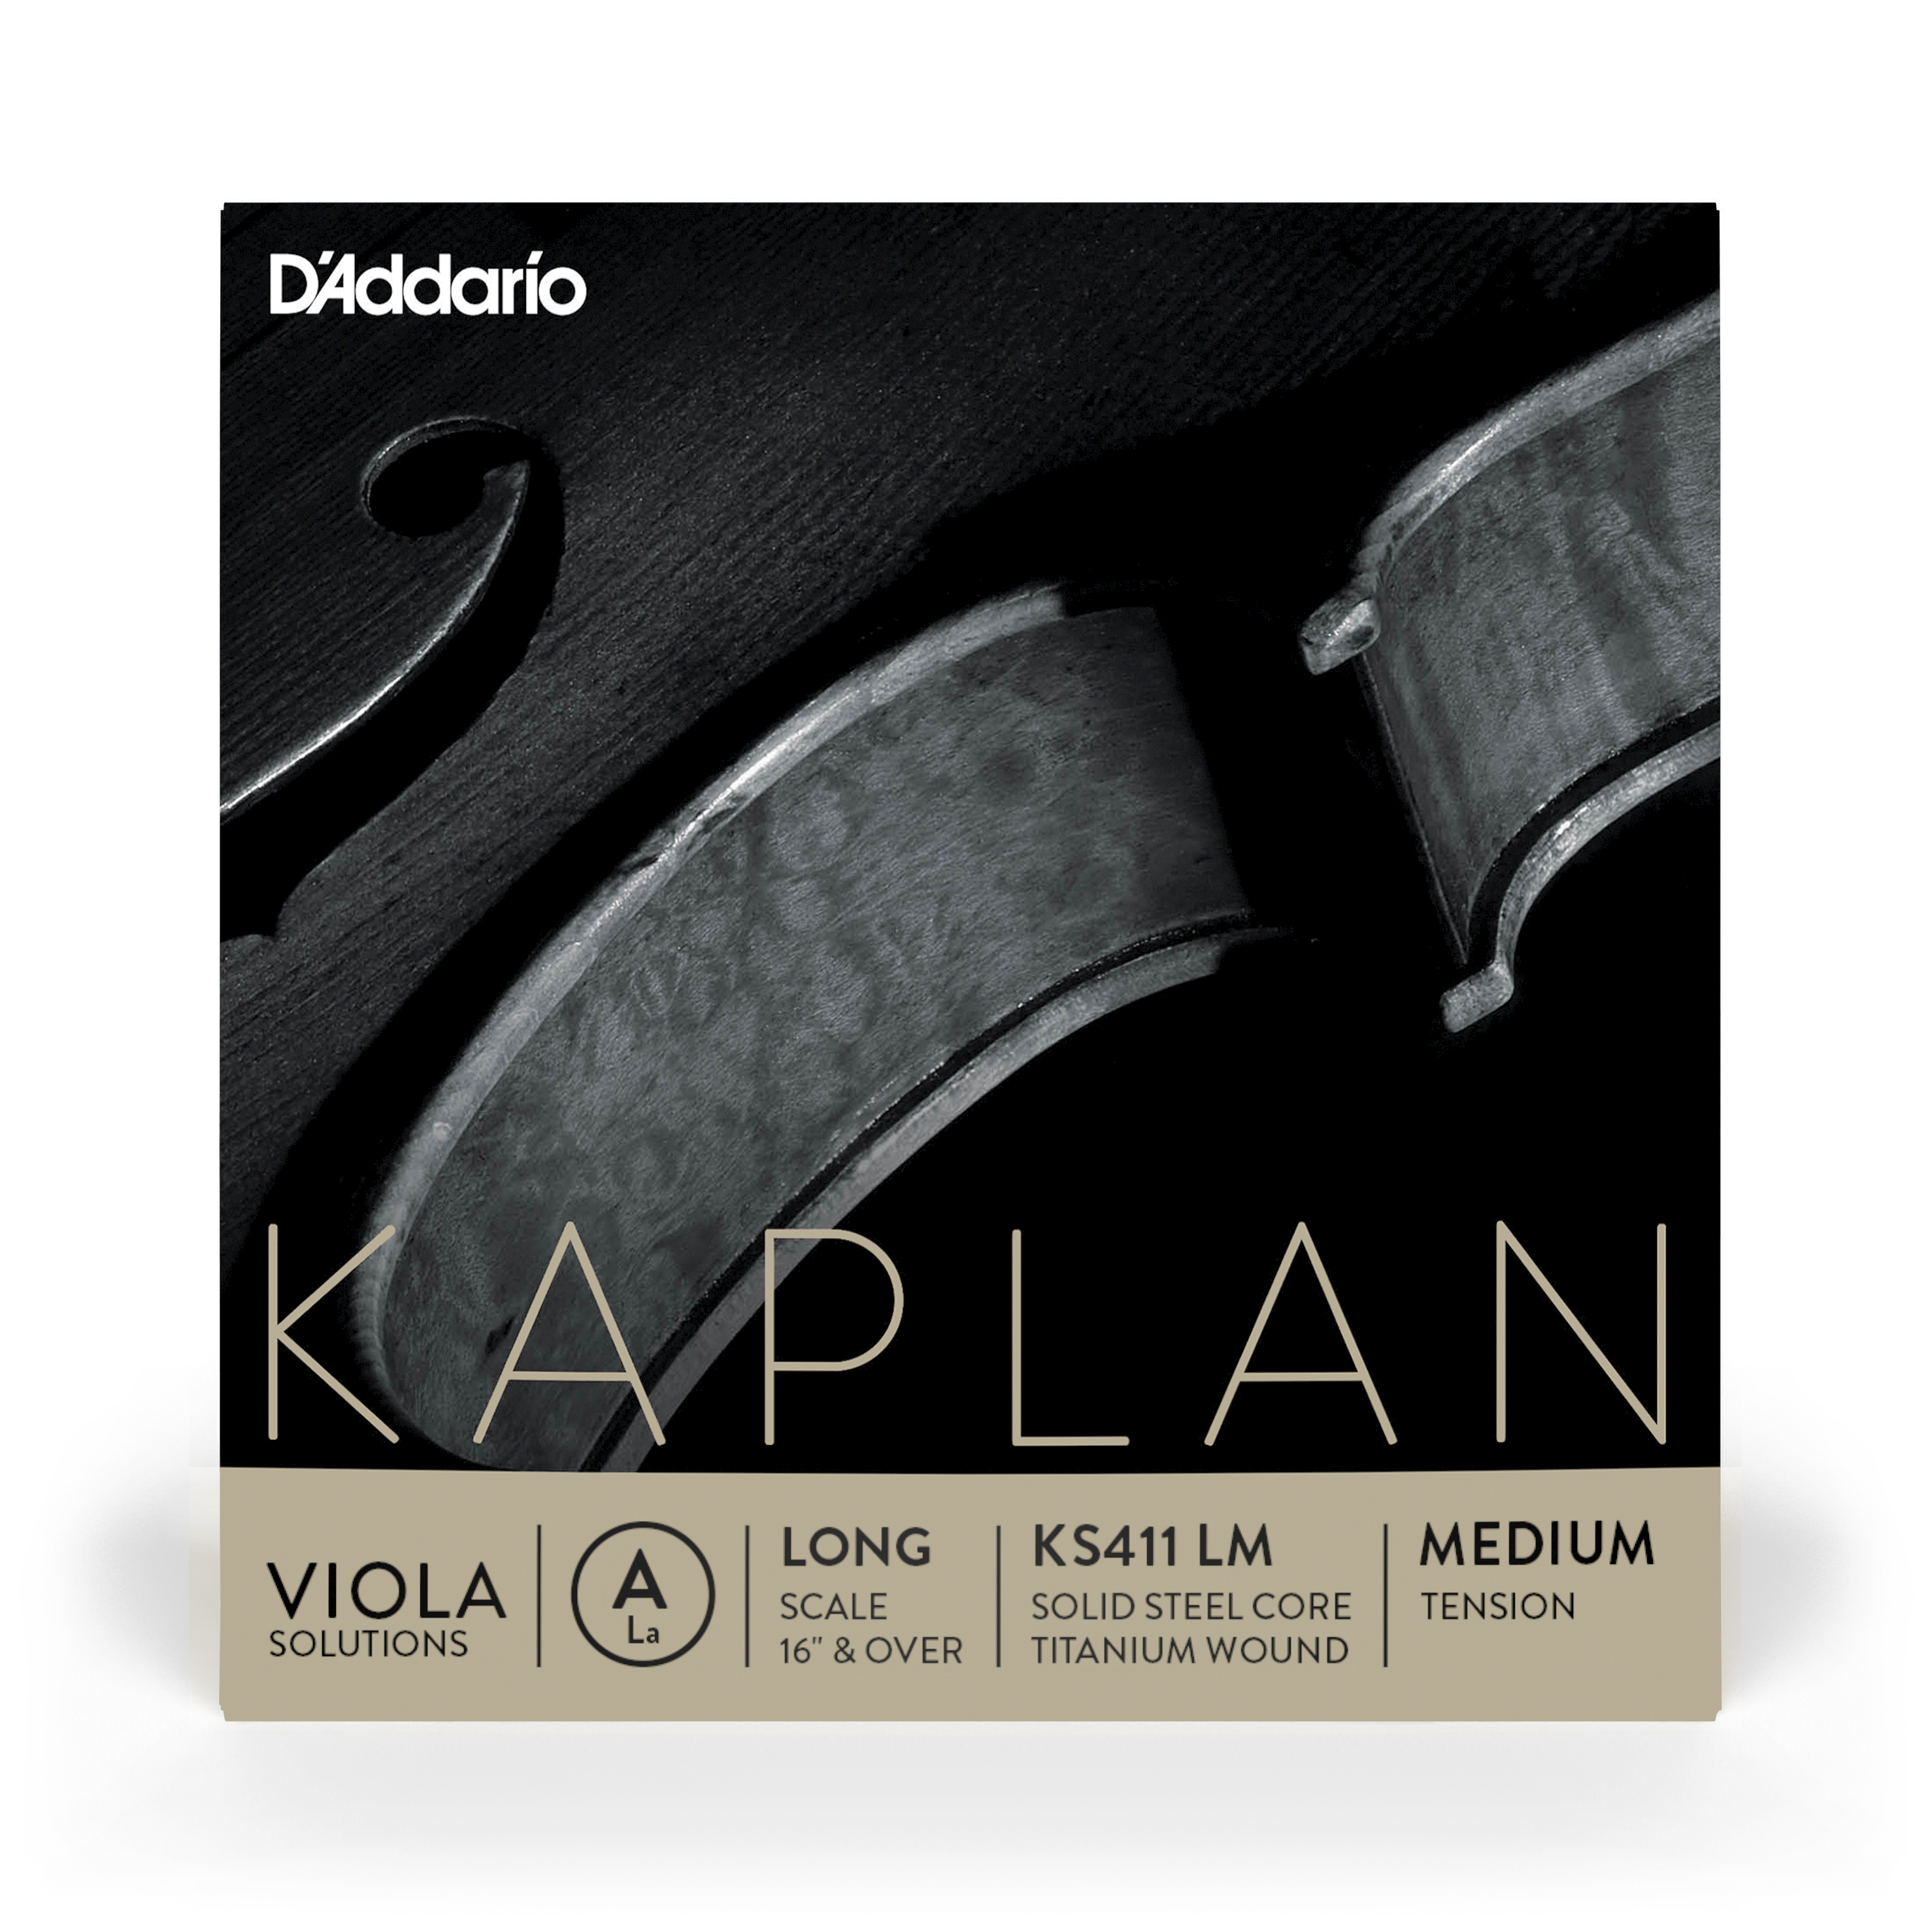 Daddario orchestral it Ks411 lm corda singola la d'addario kaplan solutions per viola, long scale, tensione media